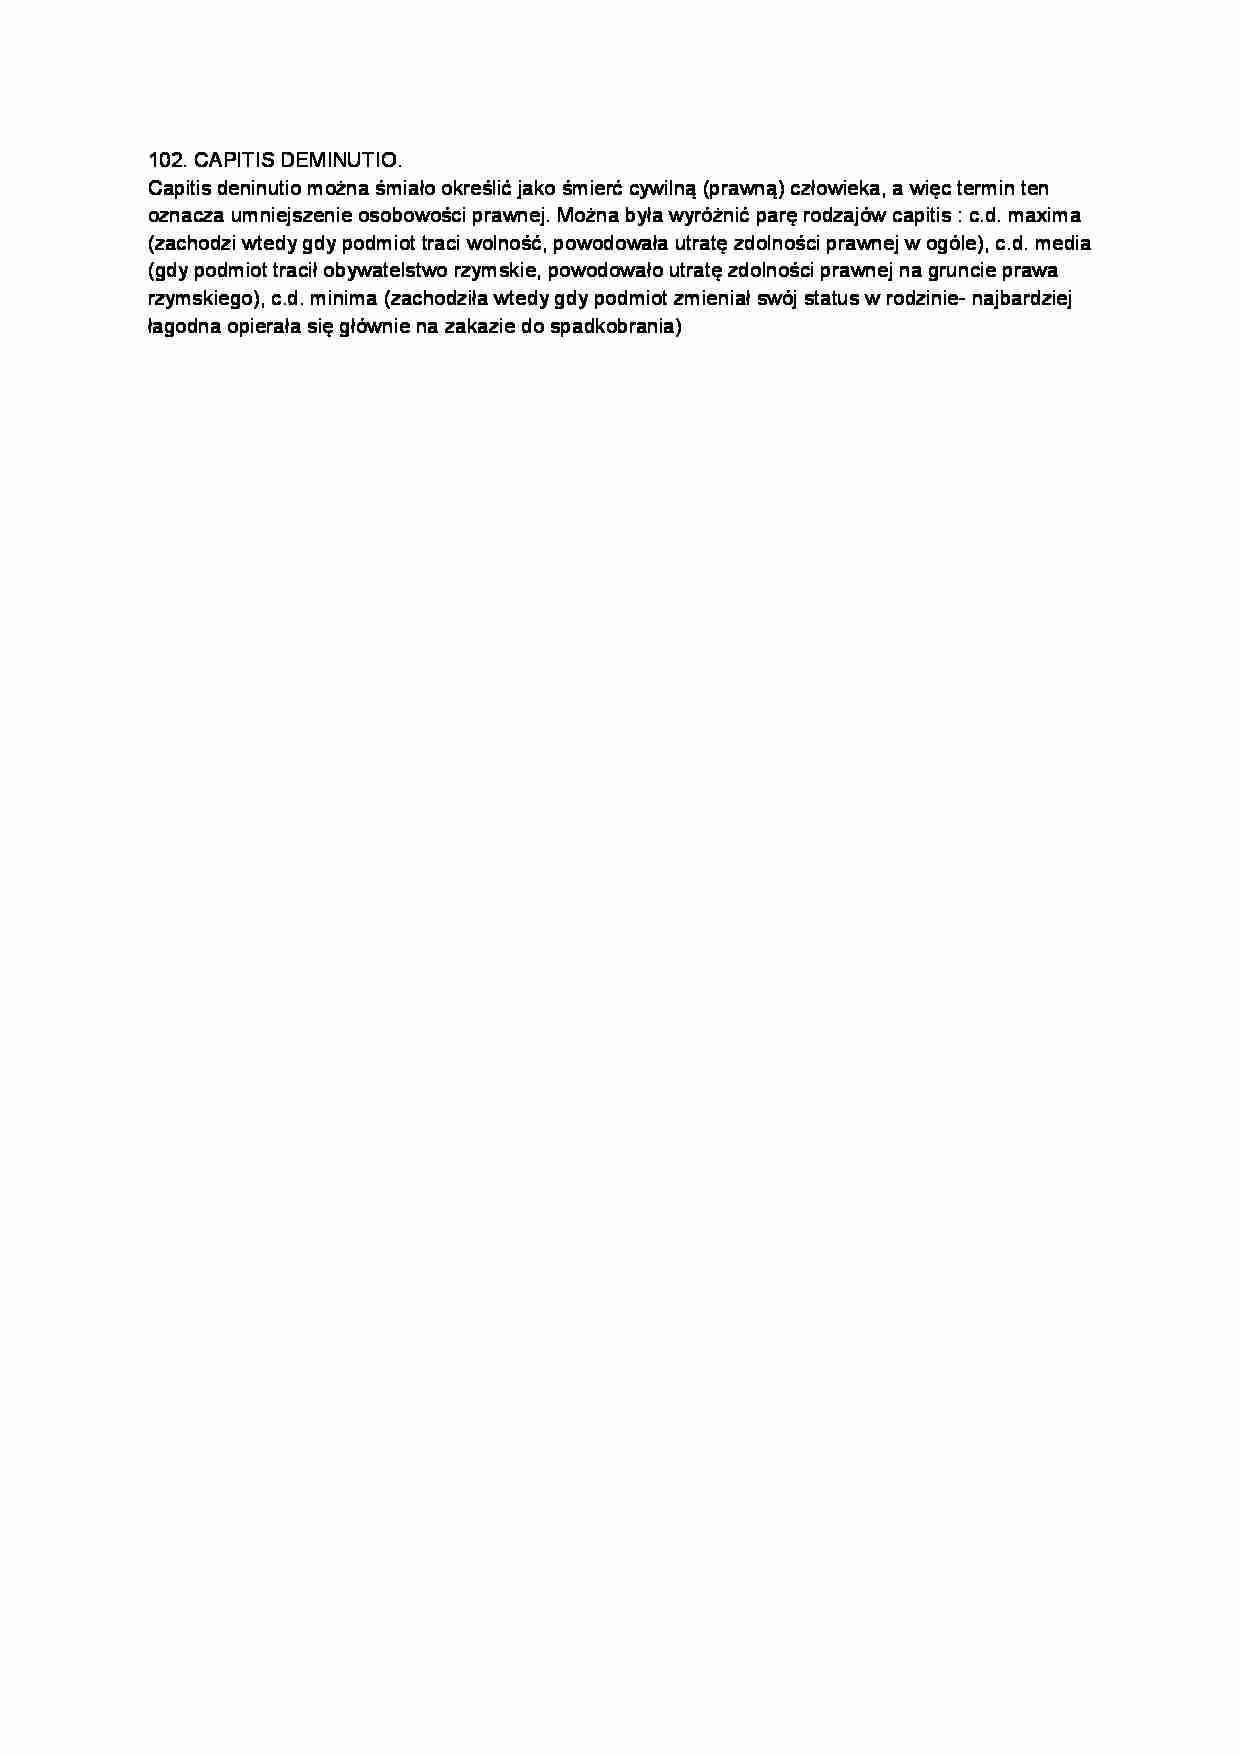 Capitis deminutio-opracowanie - strona 1